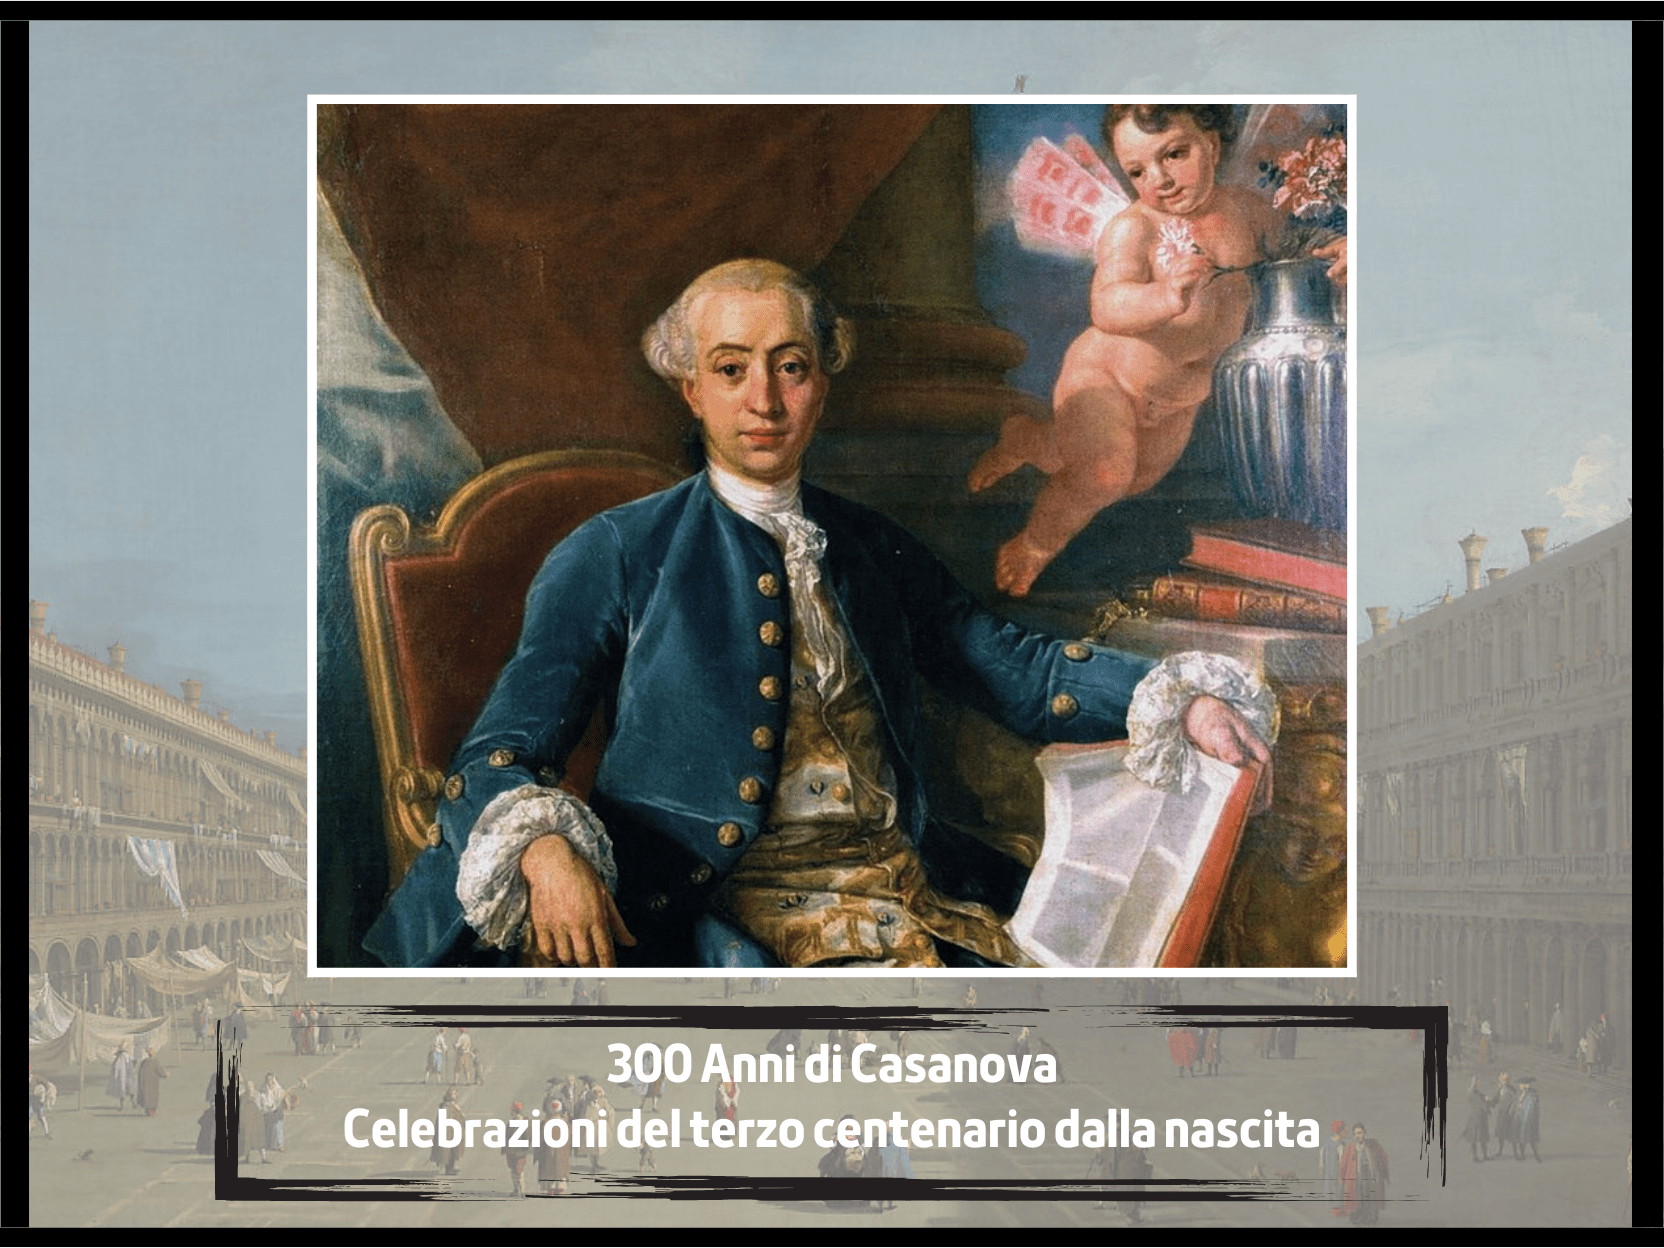 Giacomo Casanova terzo centenario: eventi e celebrazioni nel 2024 per il leggendario avventuriero veneziano